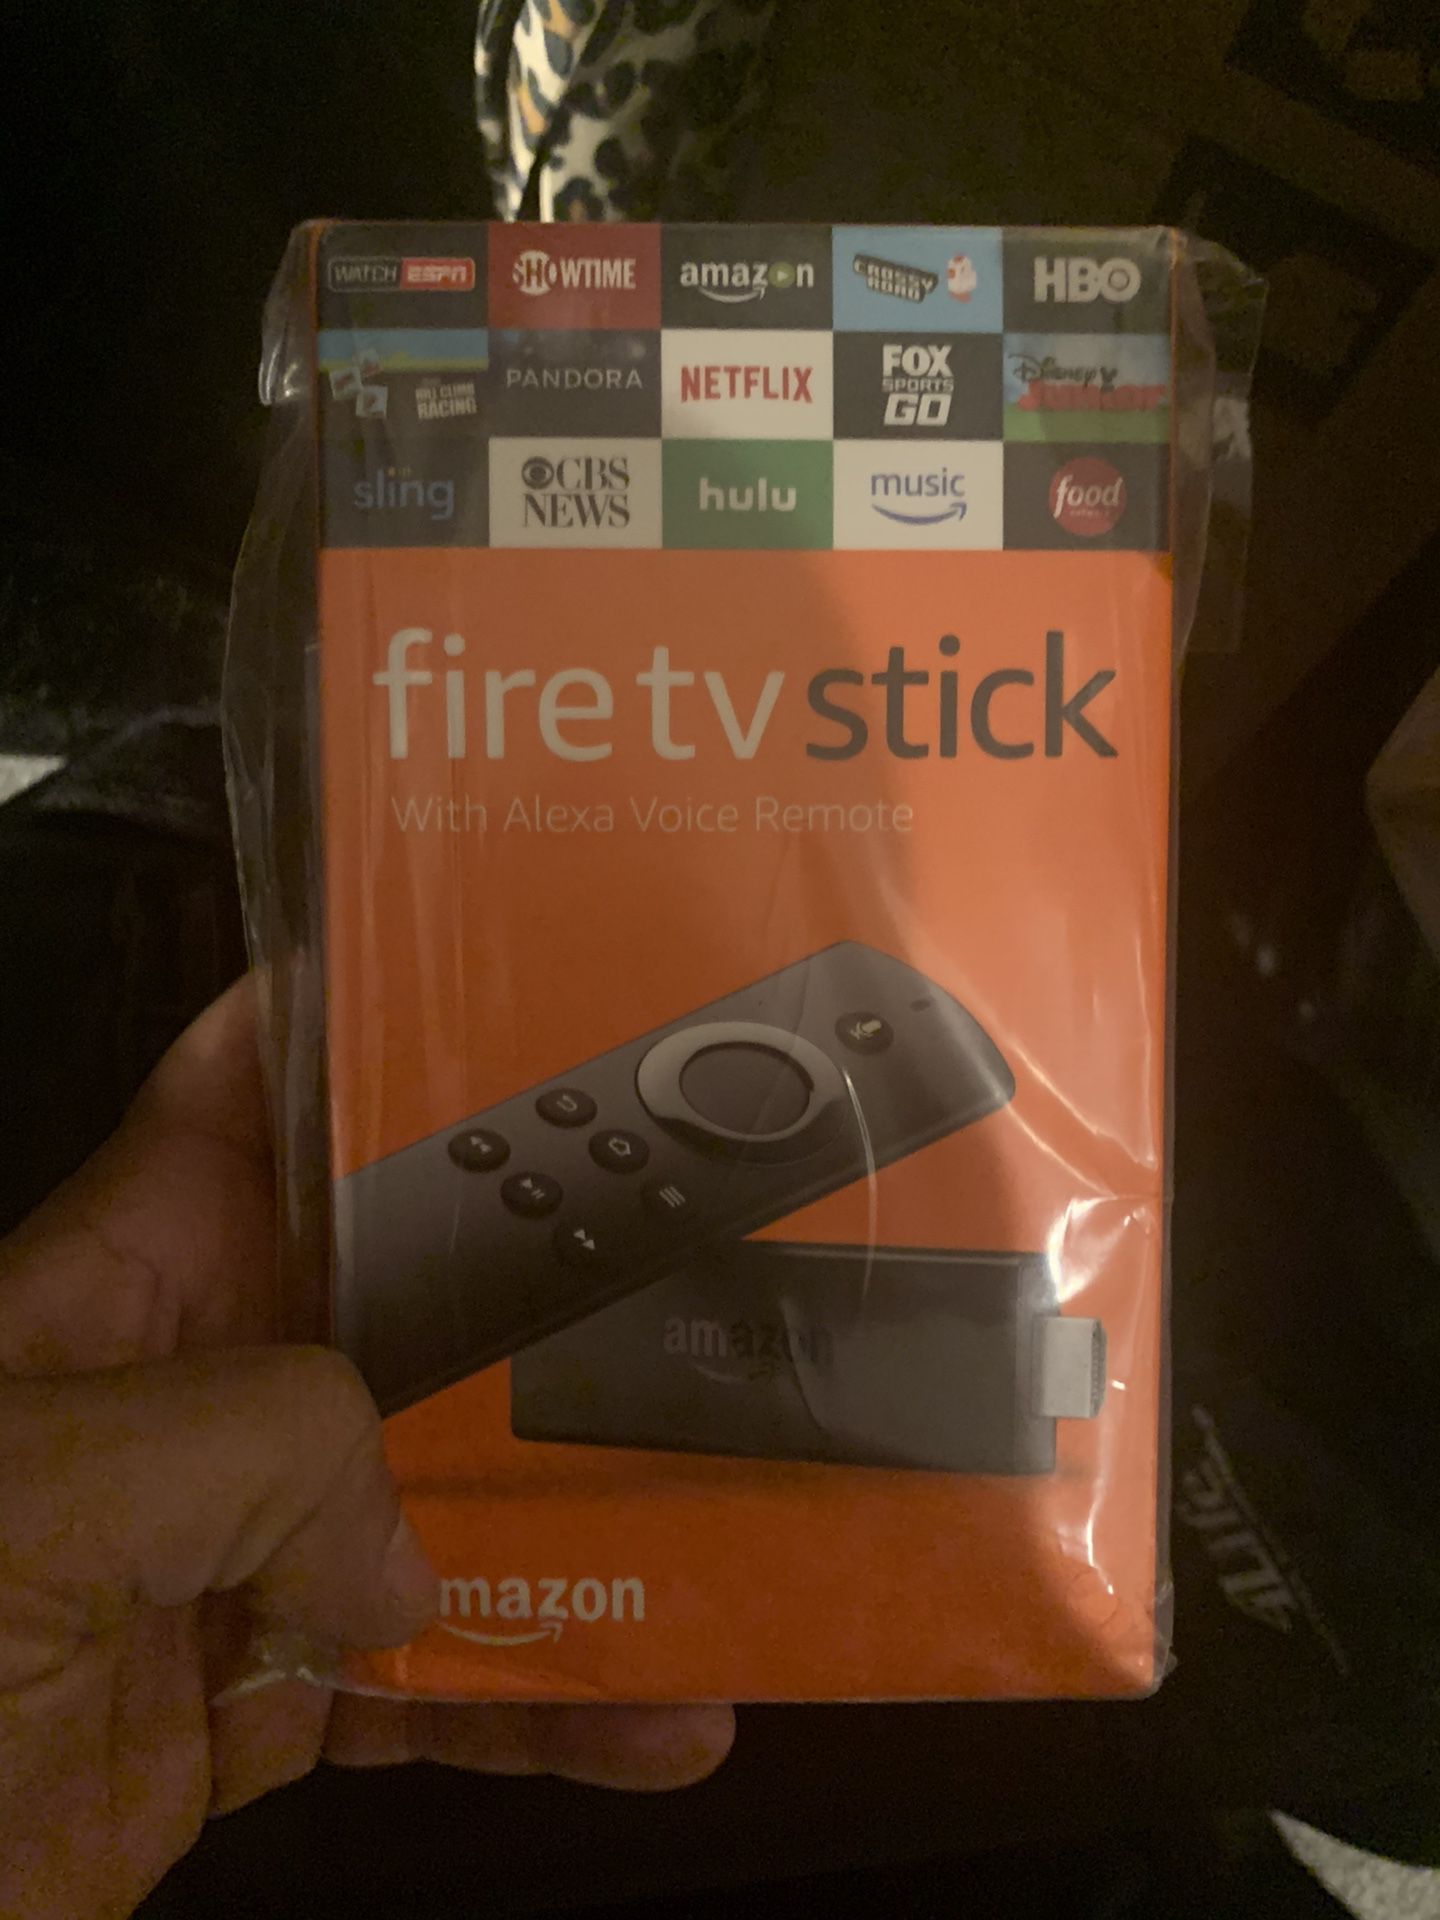 Fire tv stick